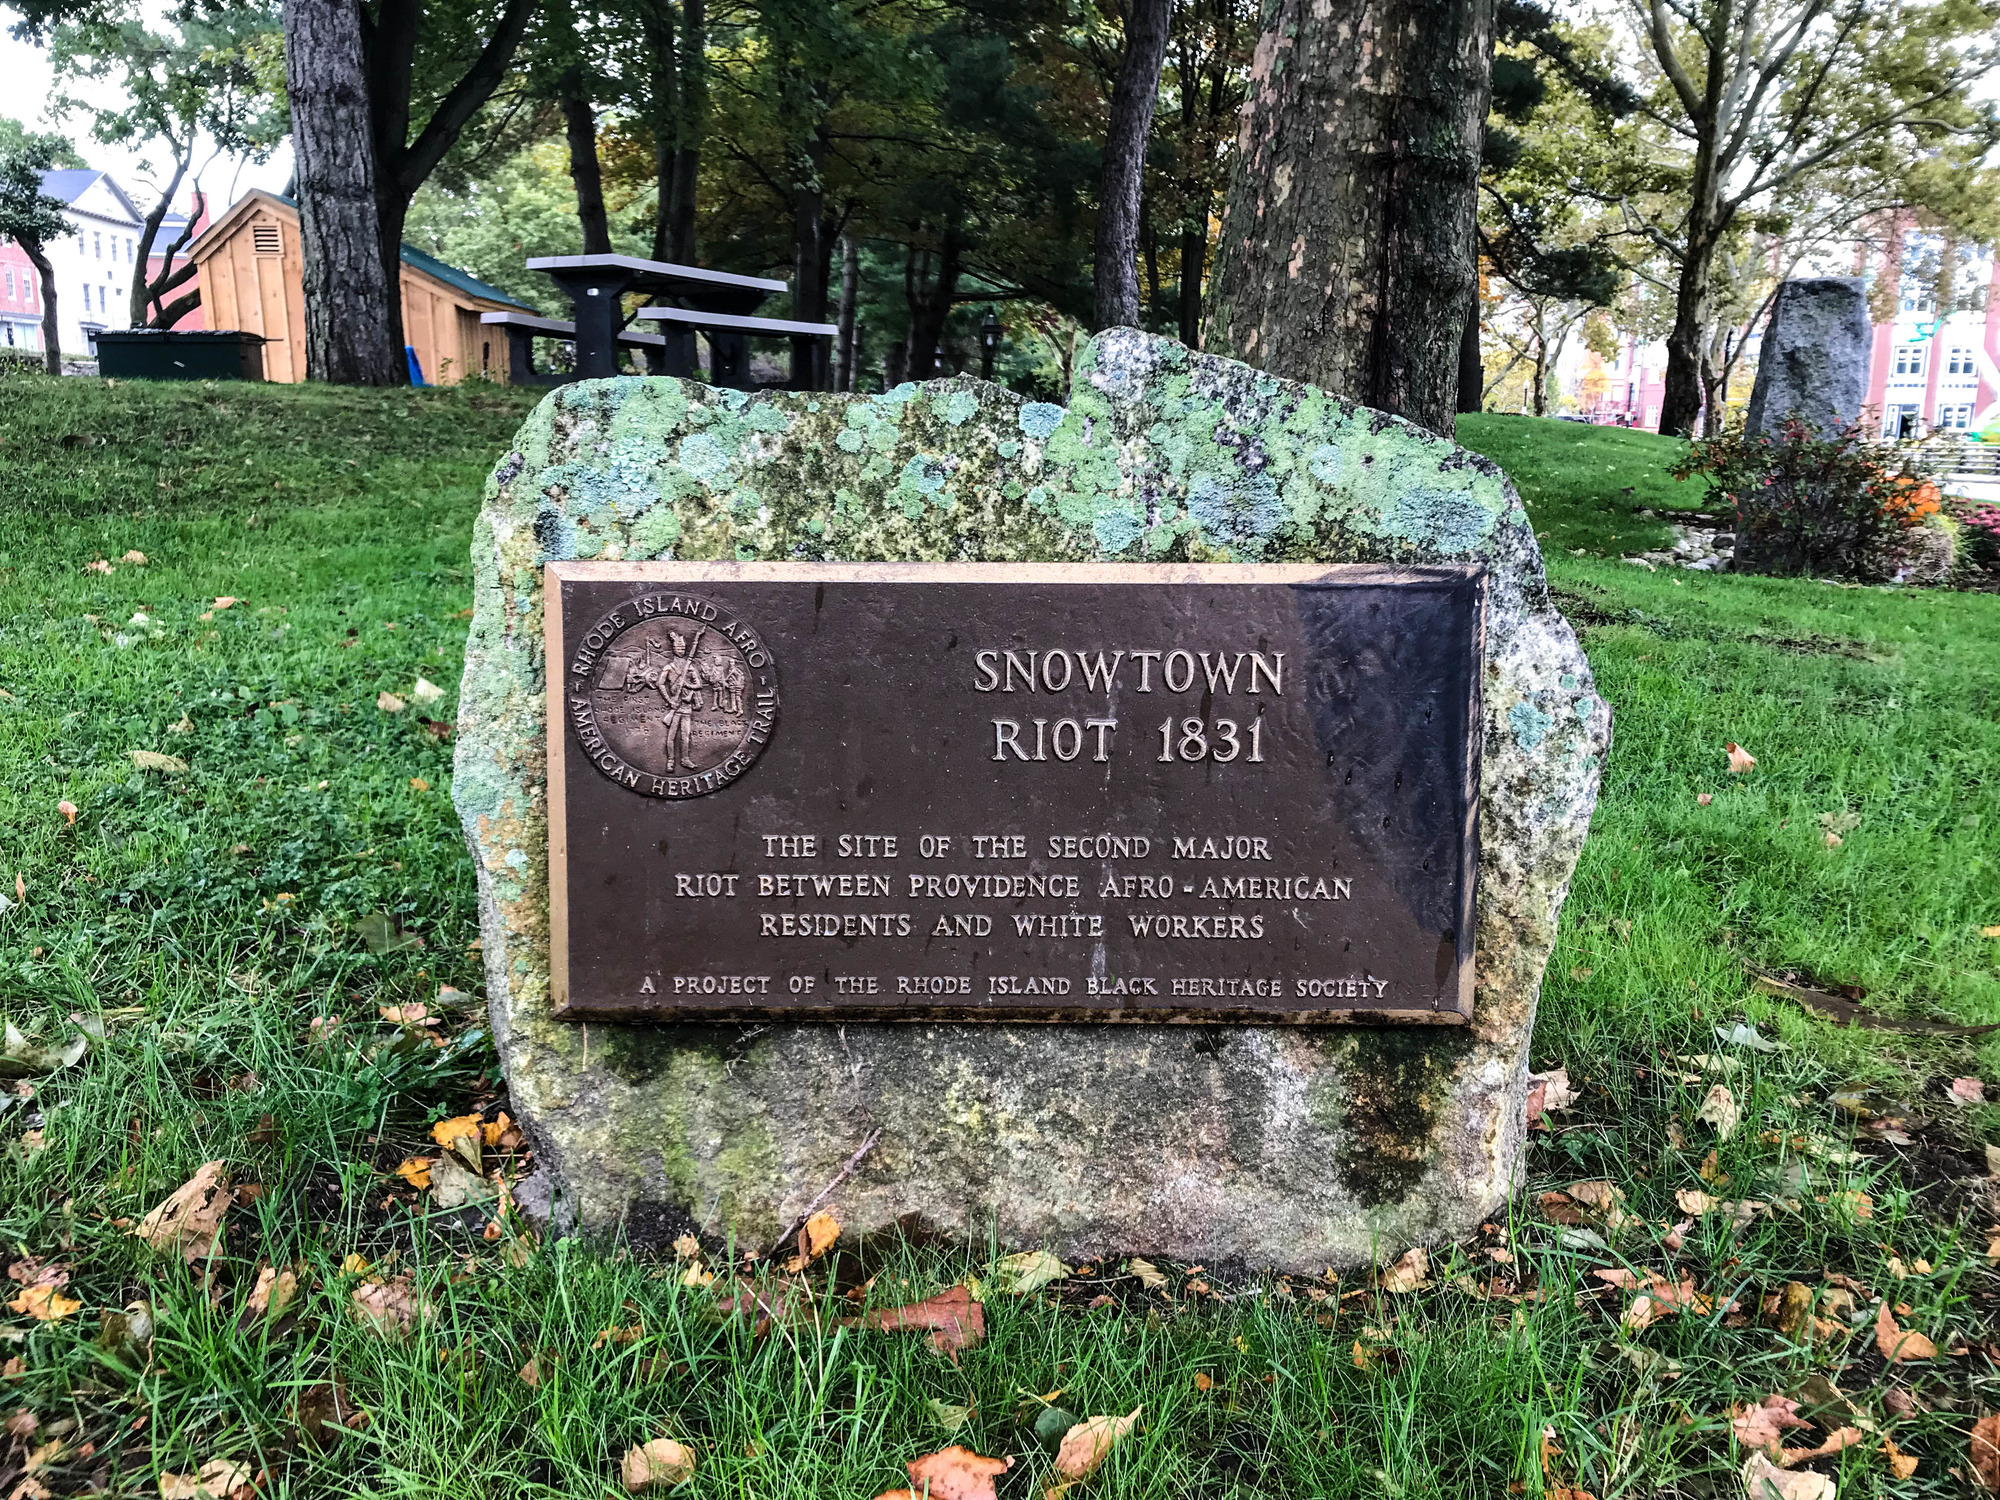 Snowtown Riot 1831 plaque on a rock